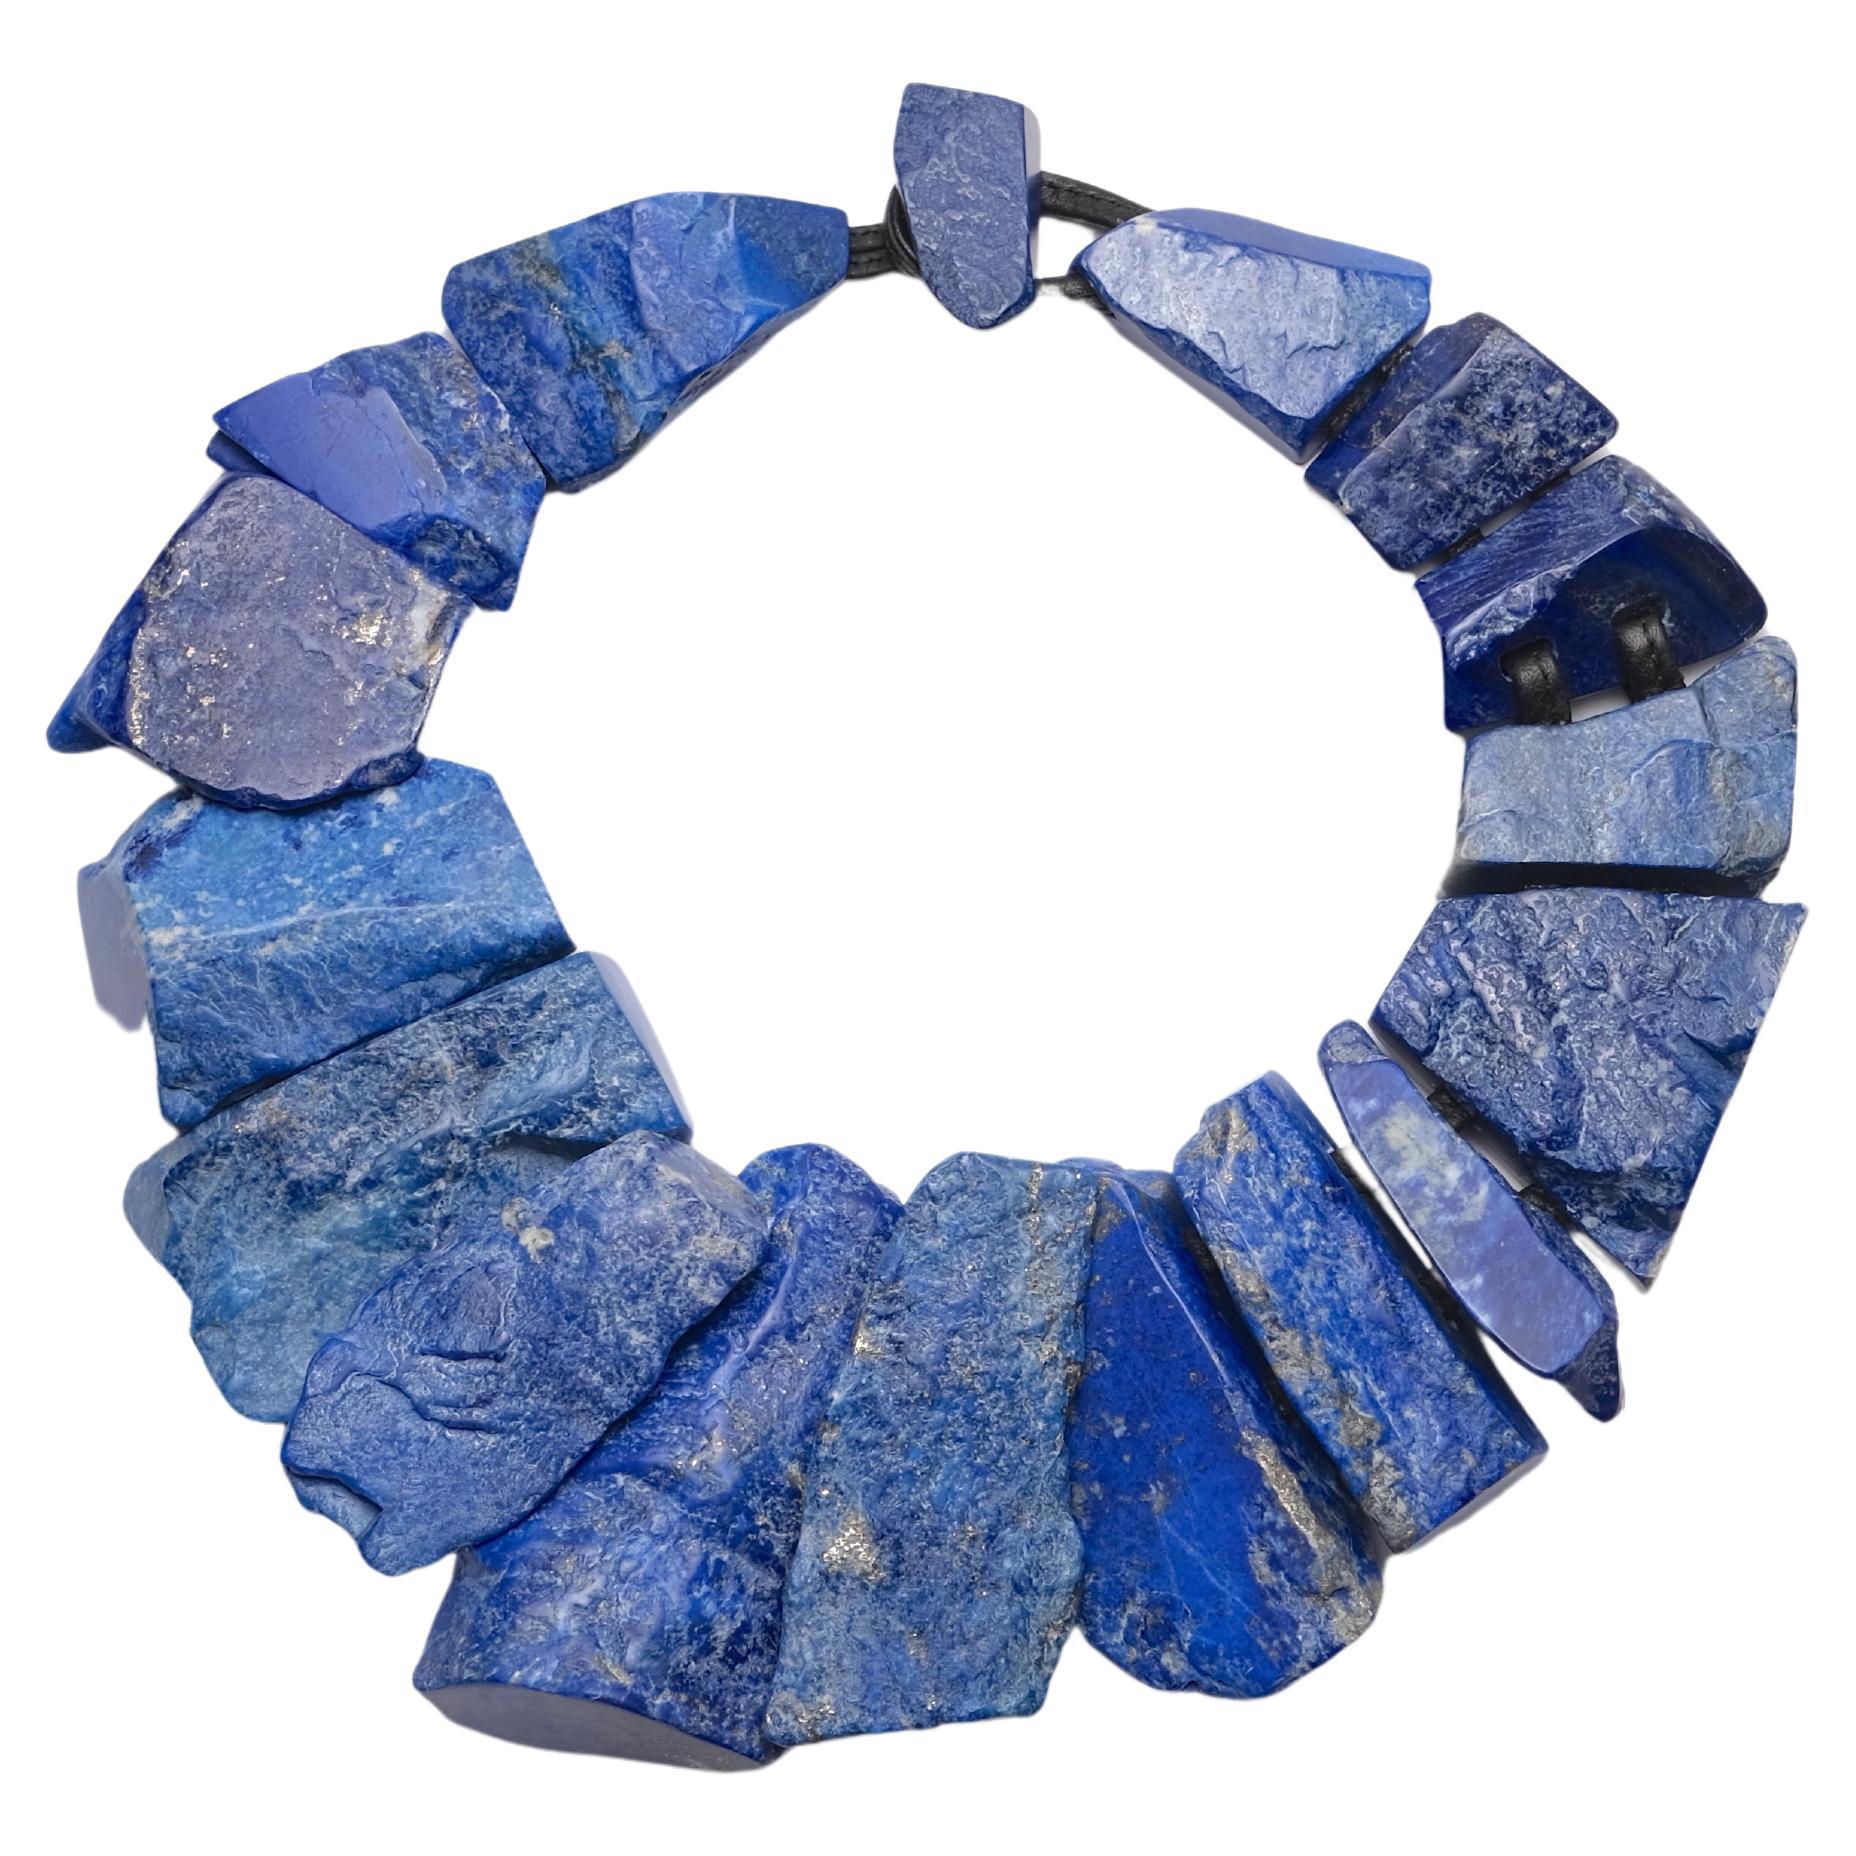 Collier unique en son genre en lapis-lazuli de la marque danoise Monies